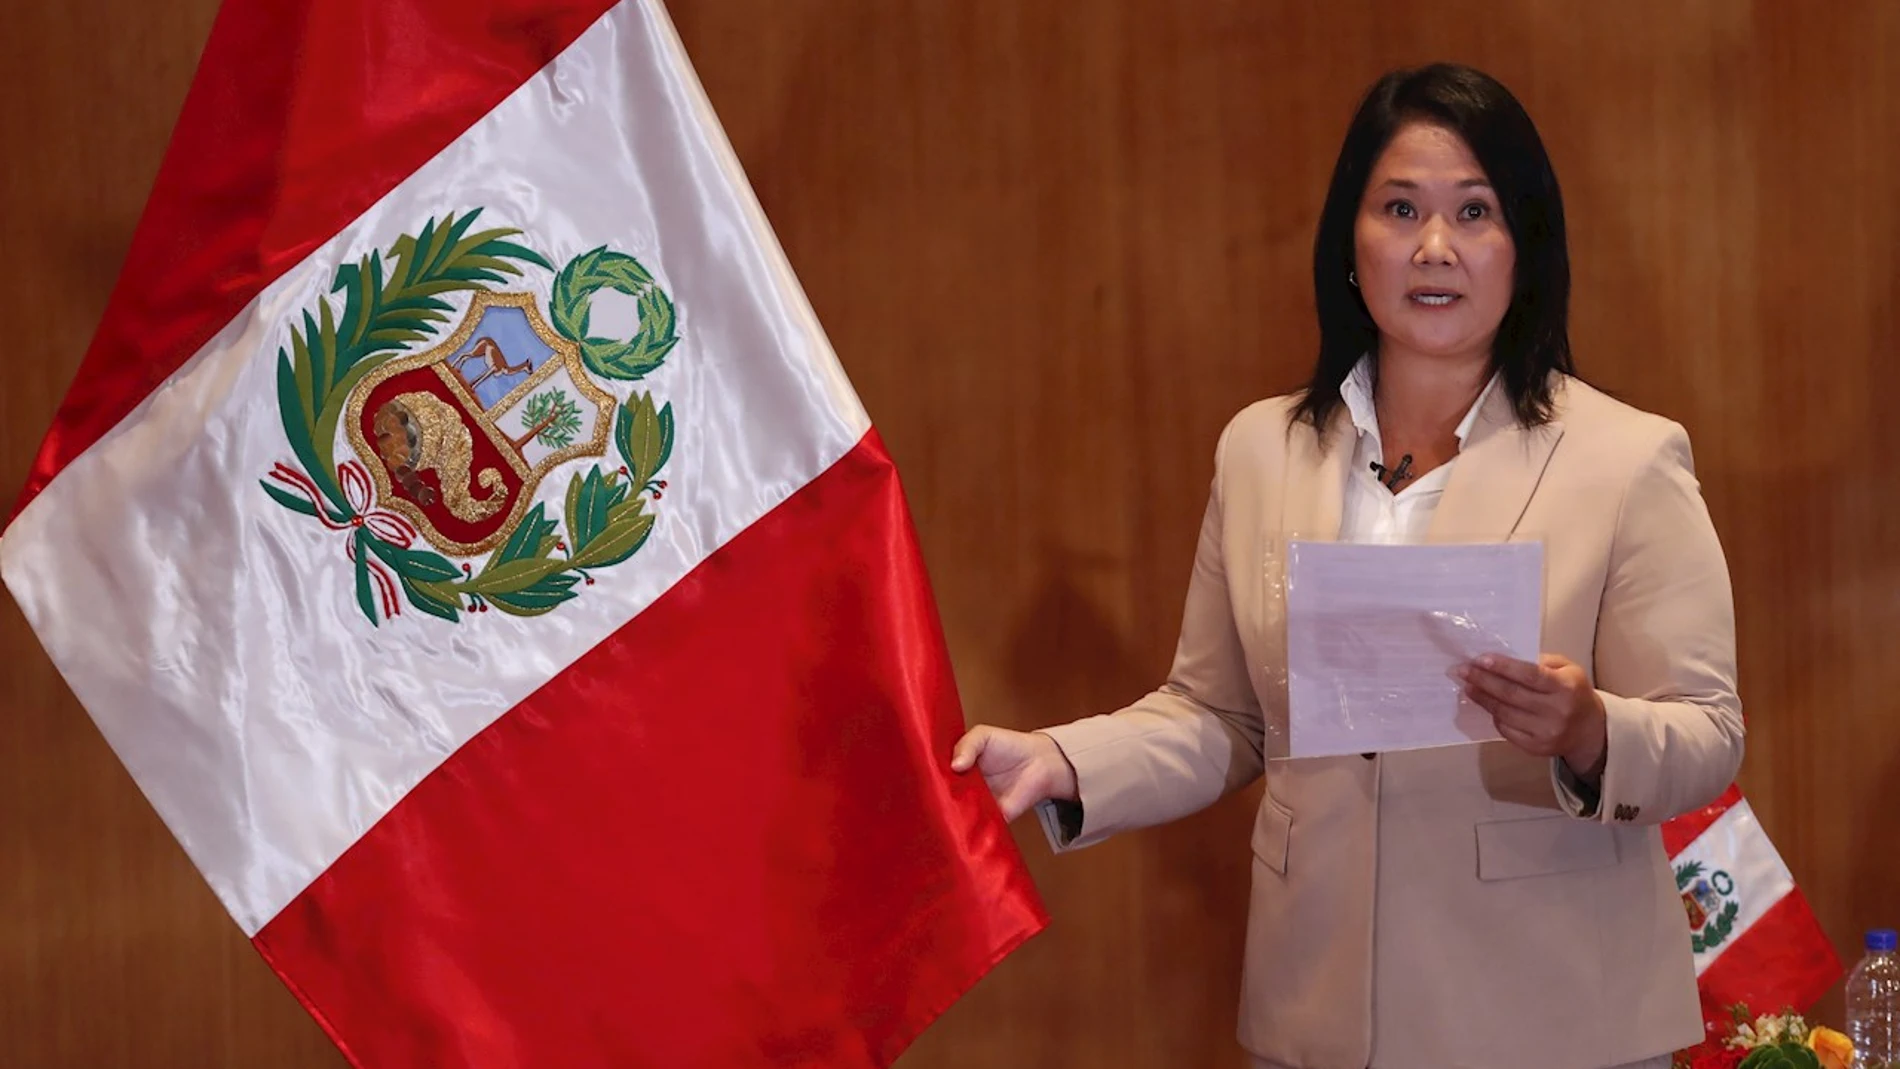 En la imagen, la candidata presidencial peruana Keiko Fujimori, del partido Fuerza Popular